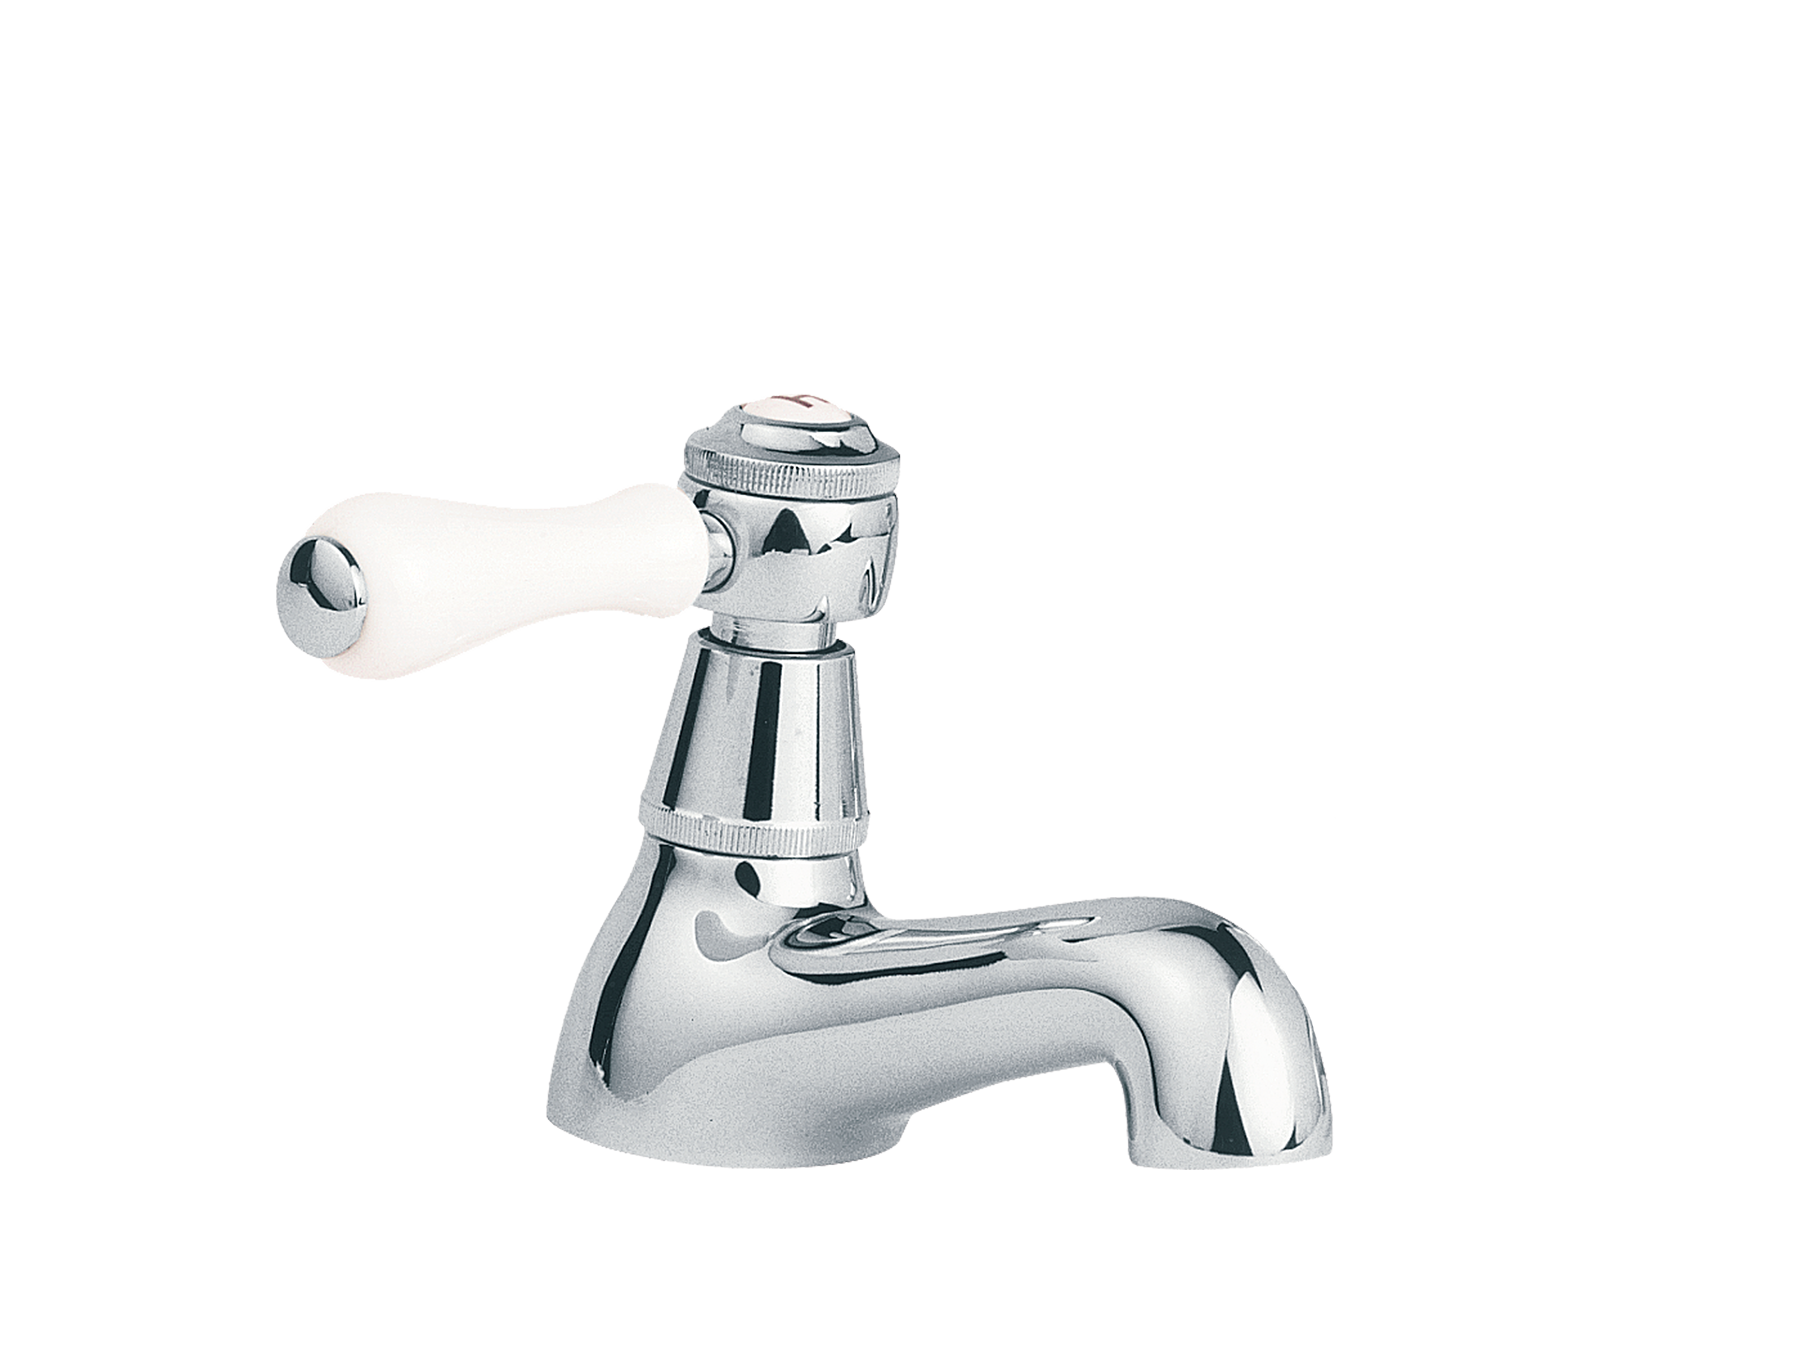 Washbasin tap, hot